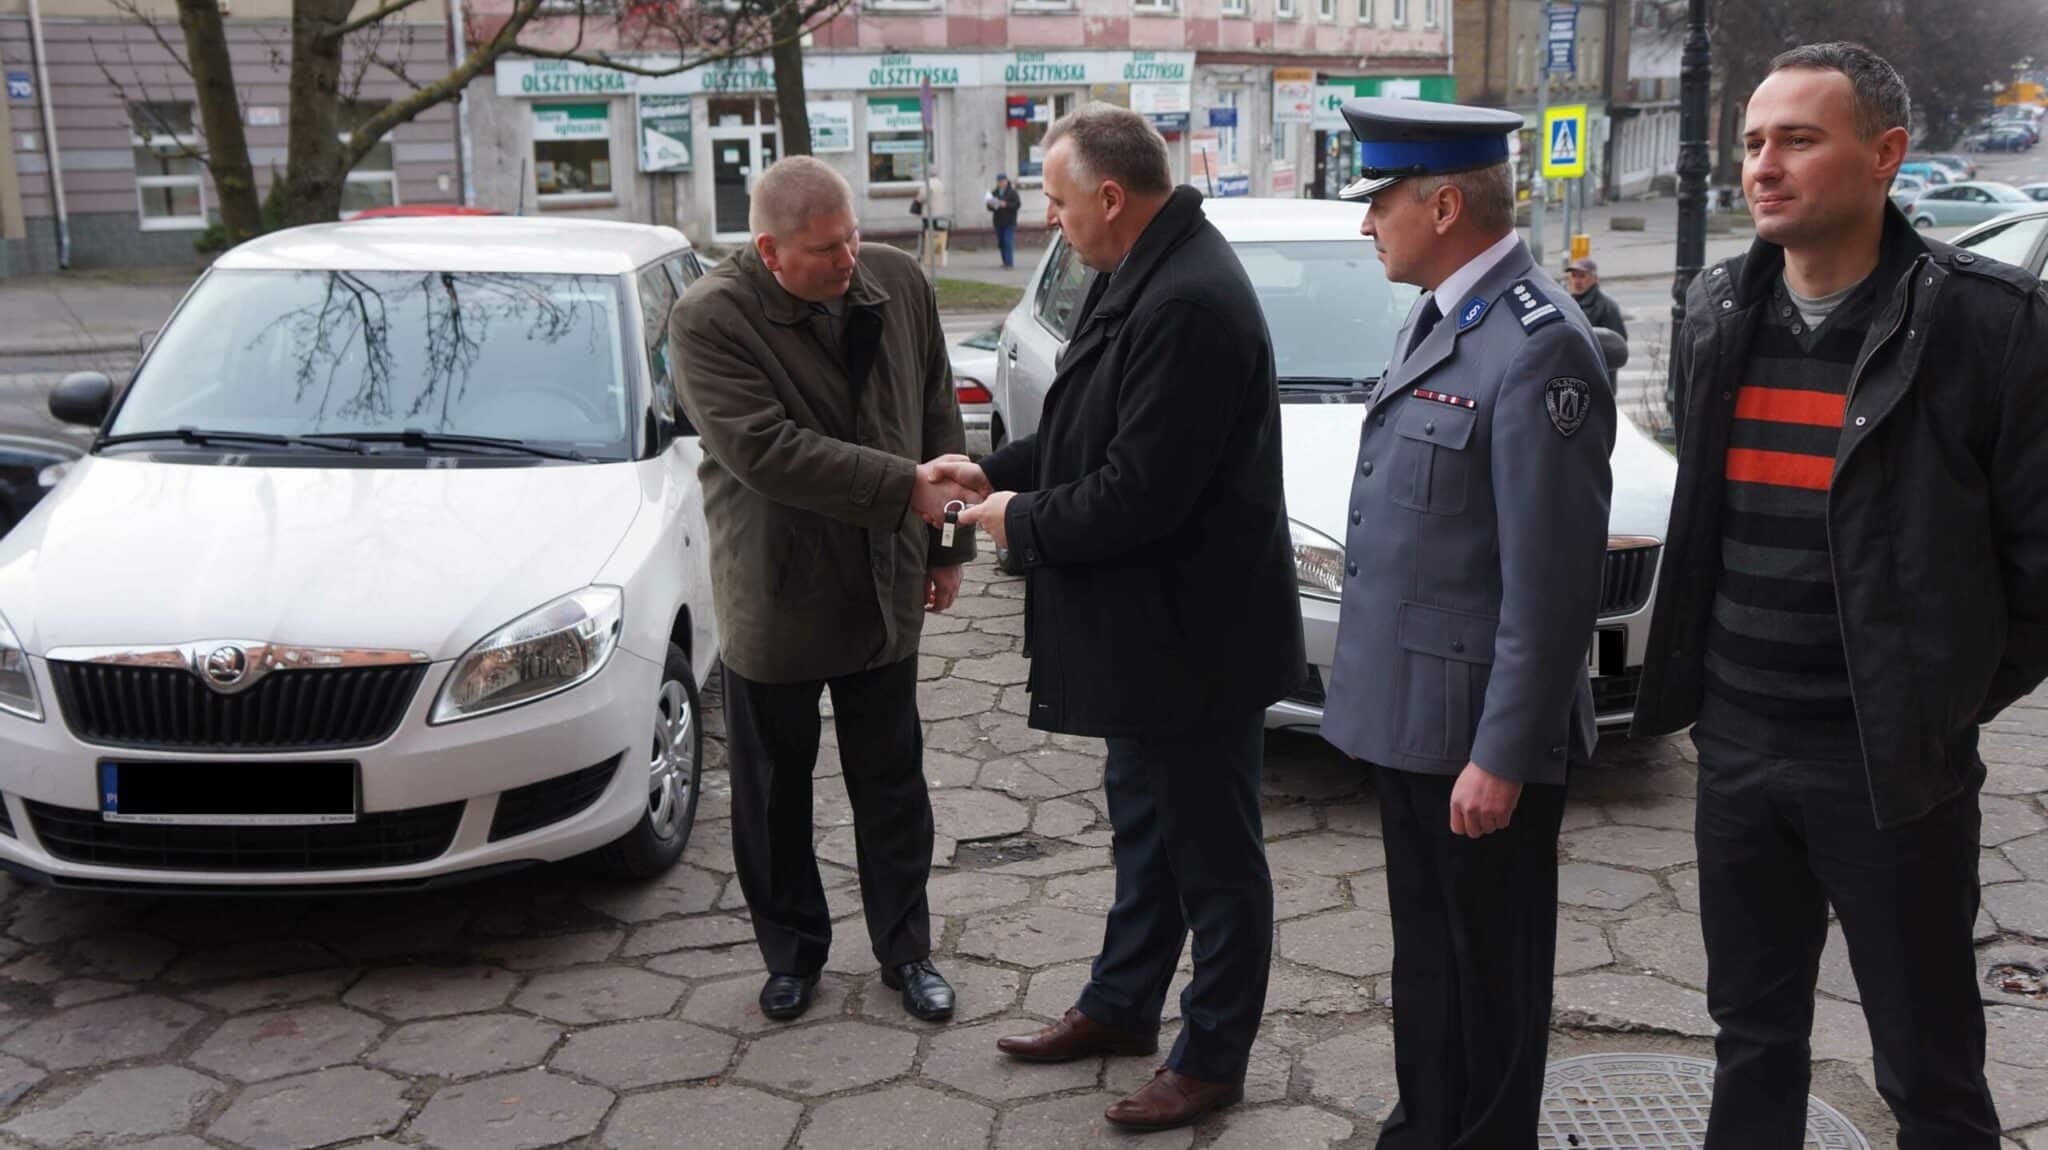 Powiat przekazał policji i strażakom prawie 600 tys. zł na nowy sprzęt i inwestycje polityka Olsztyn, Wiadomości